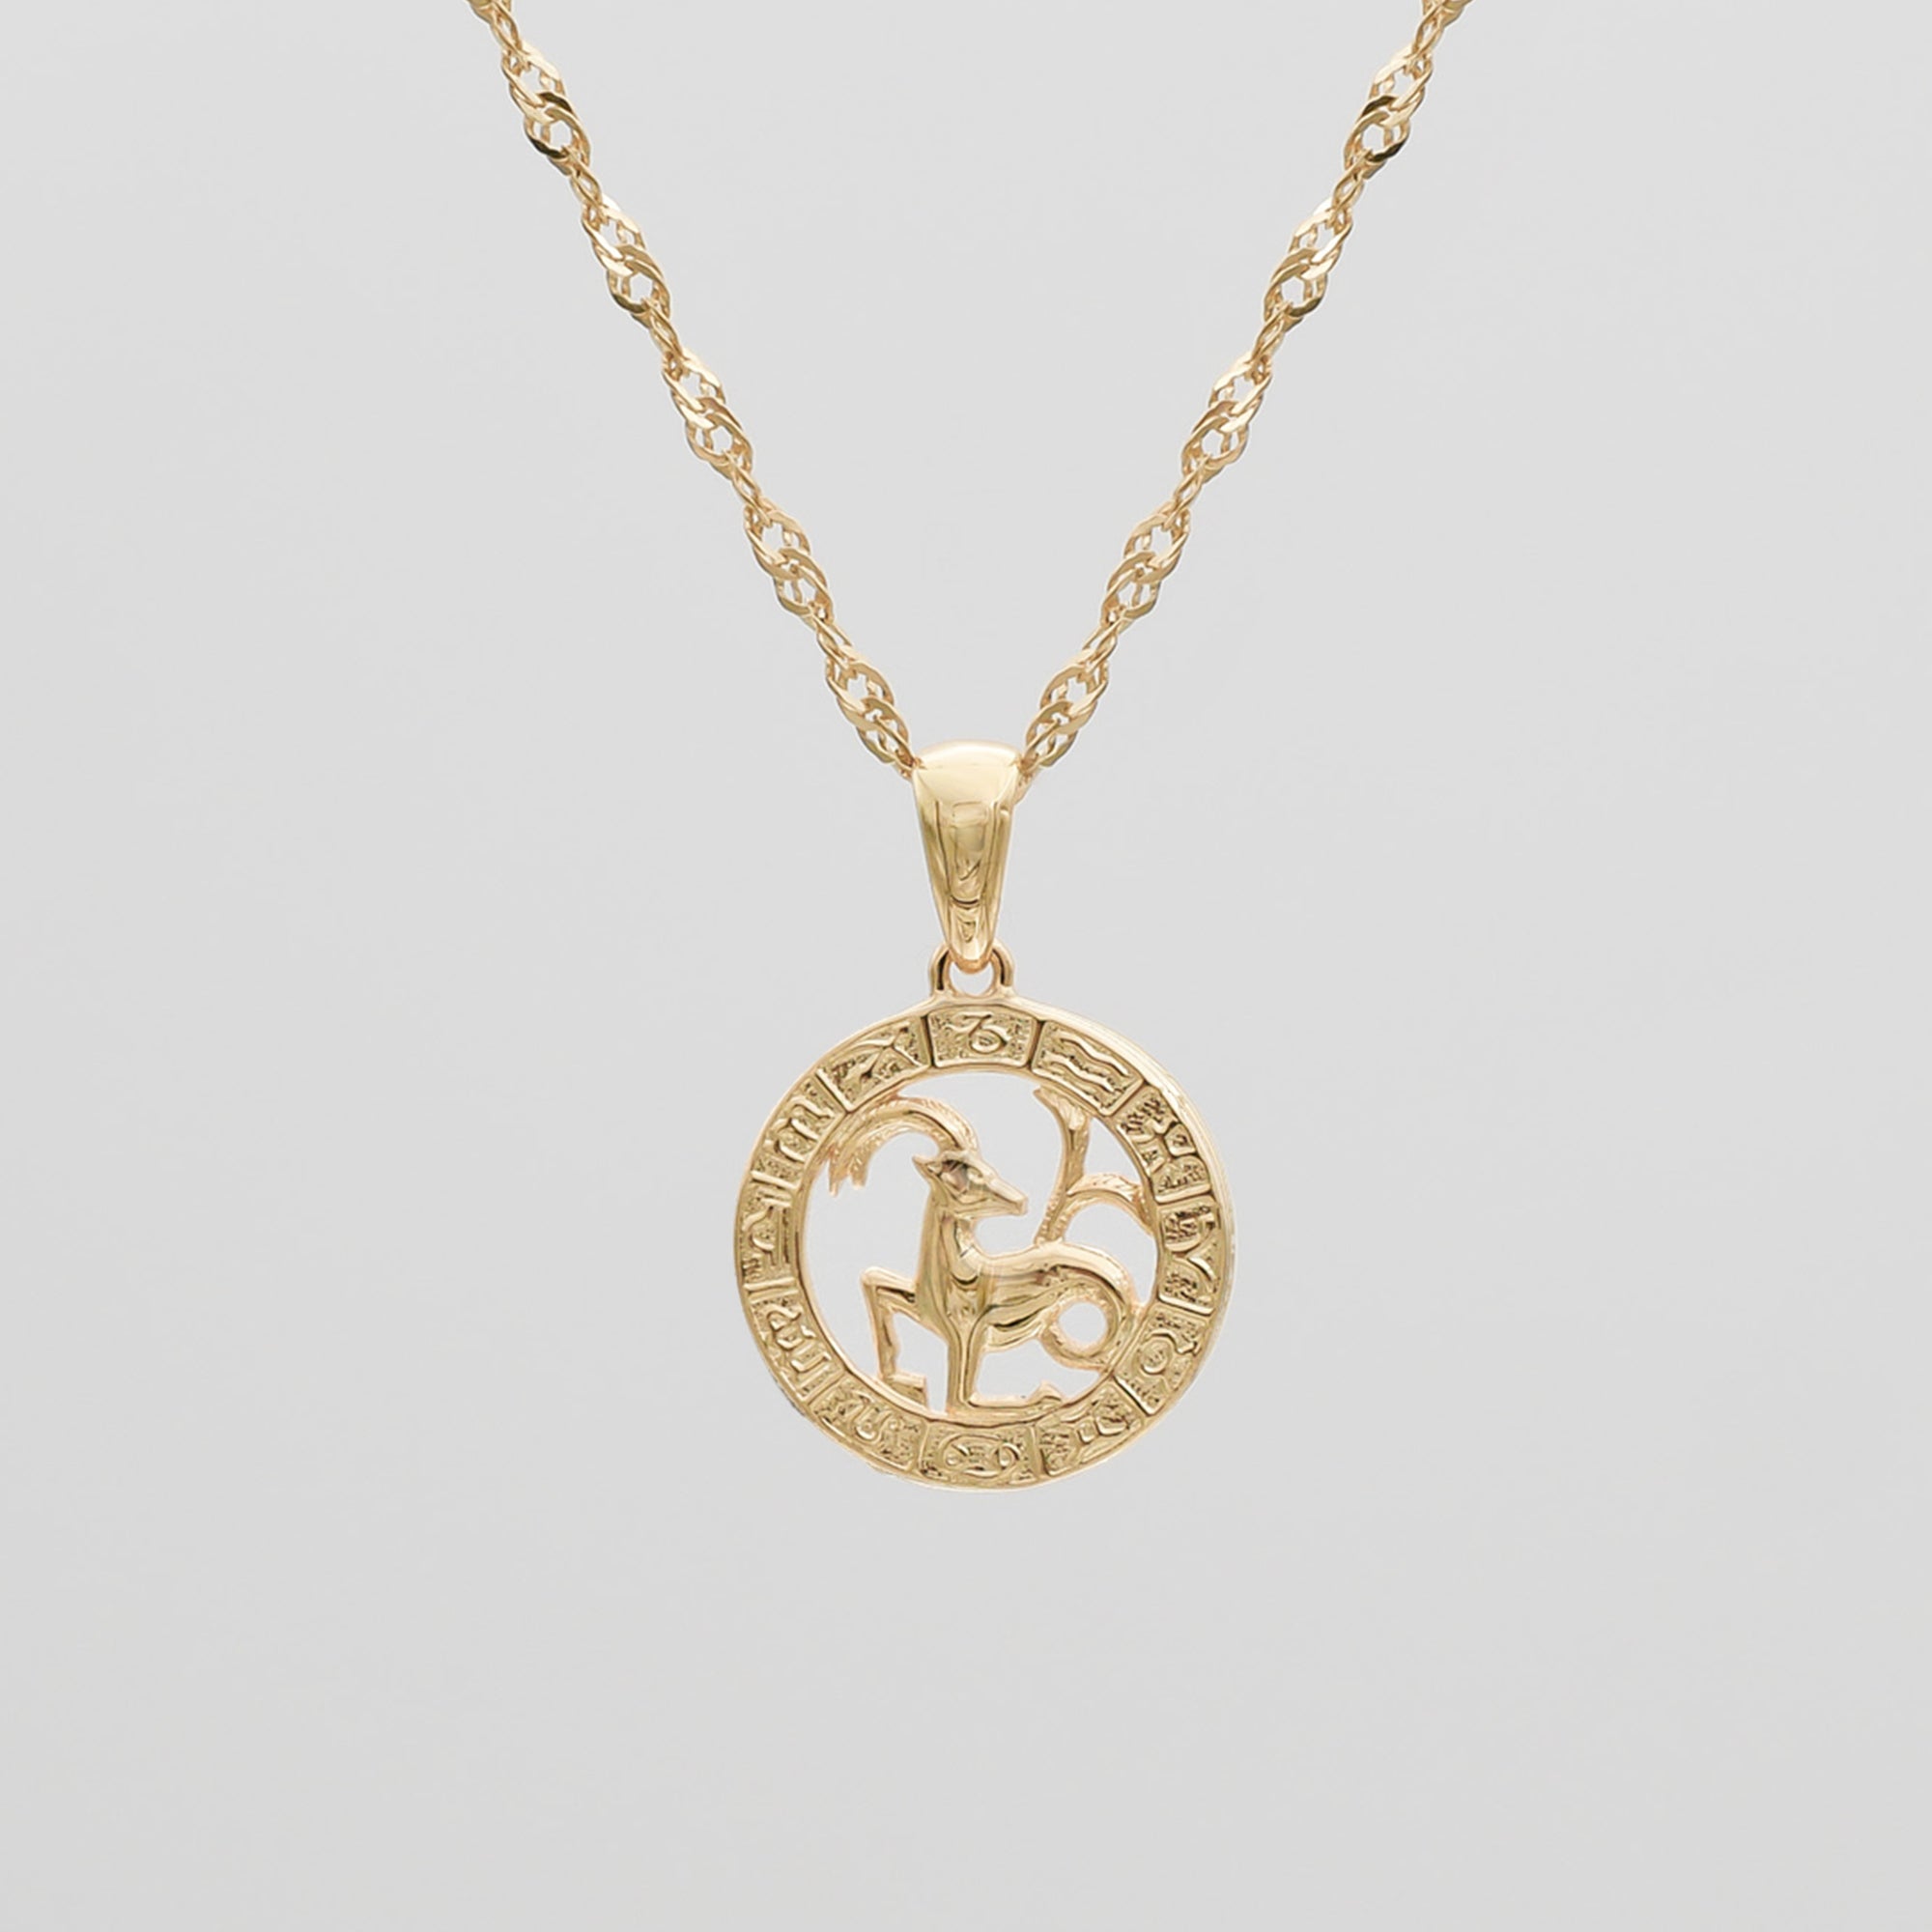  Gold Capricorn Zodiac Pendant Necklace by PRYA